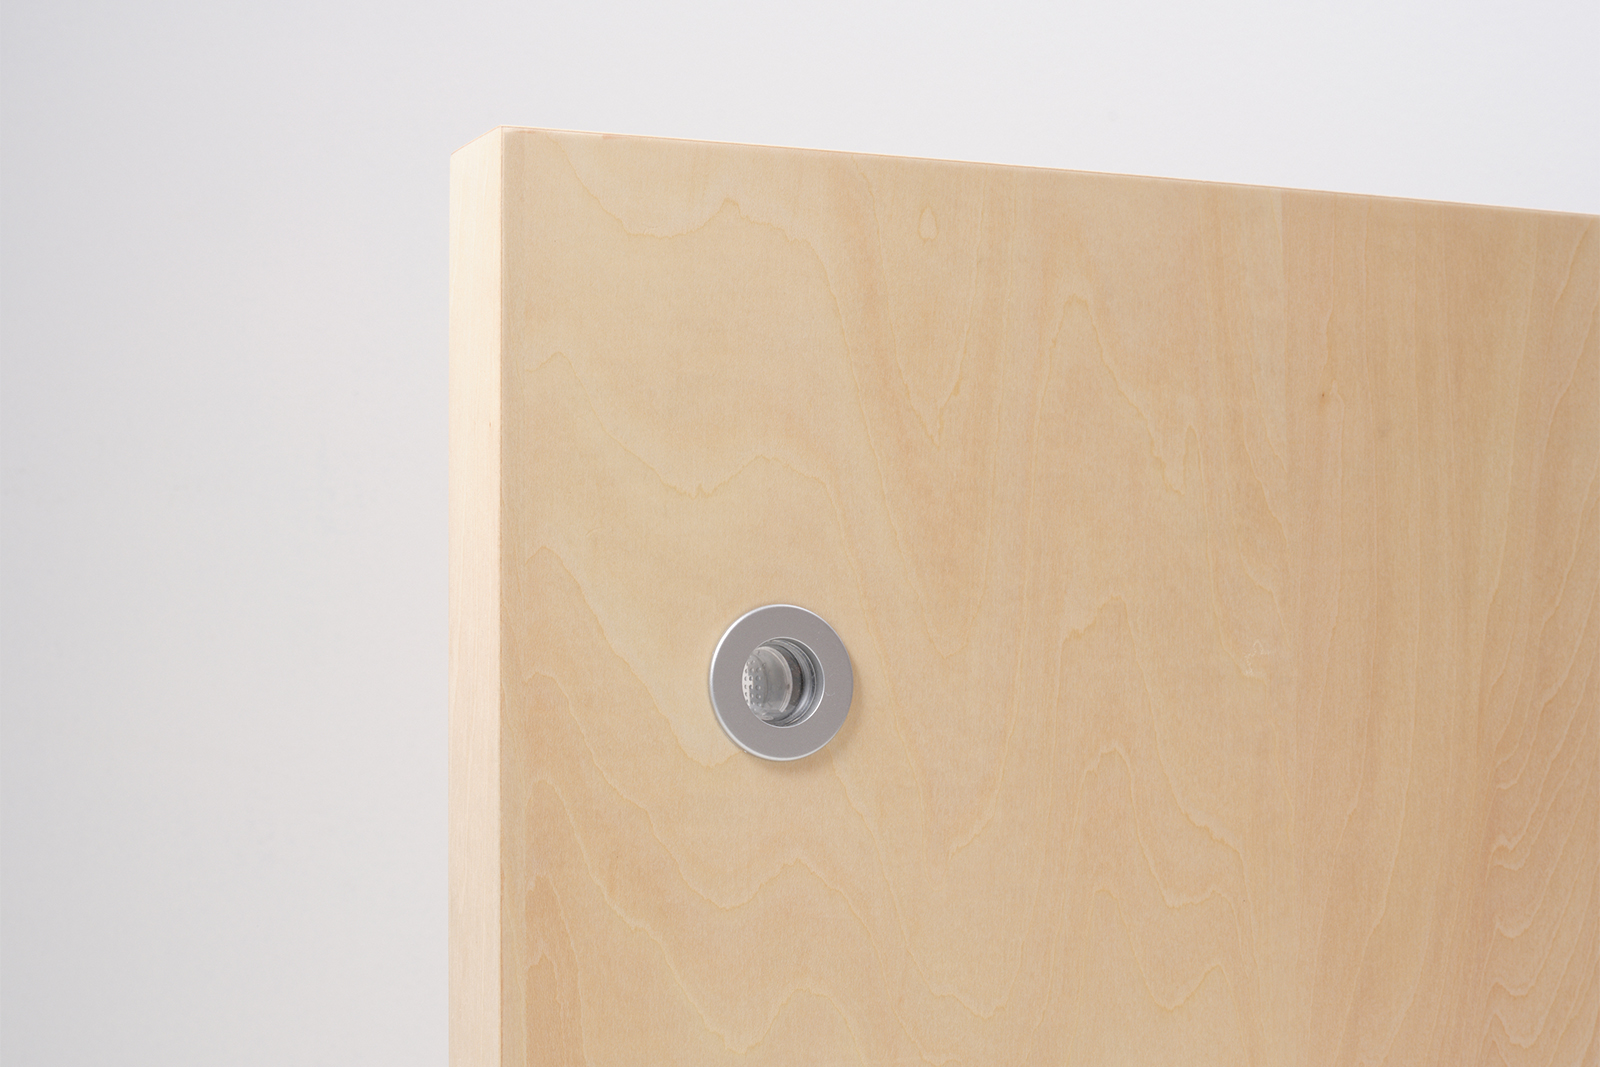 木製ユニットドア 片引き戸 シナ DW-DR012-06-G191 表示錠を選択すると付属される「明かりとり」